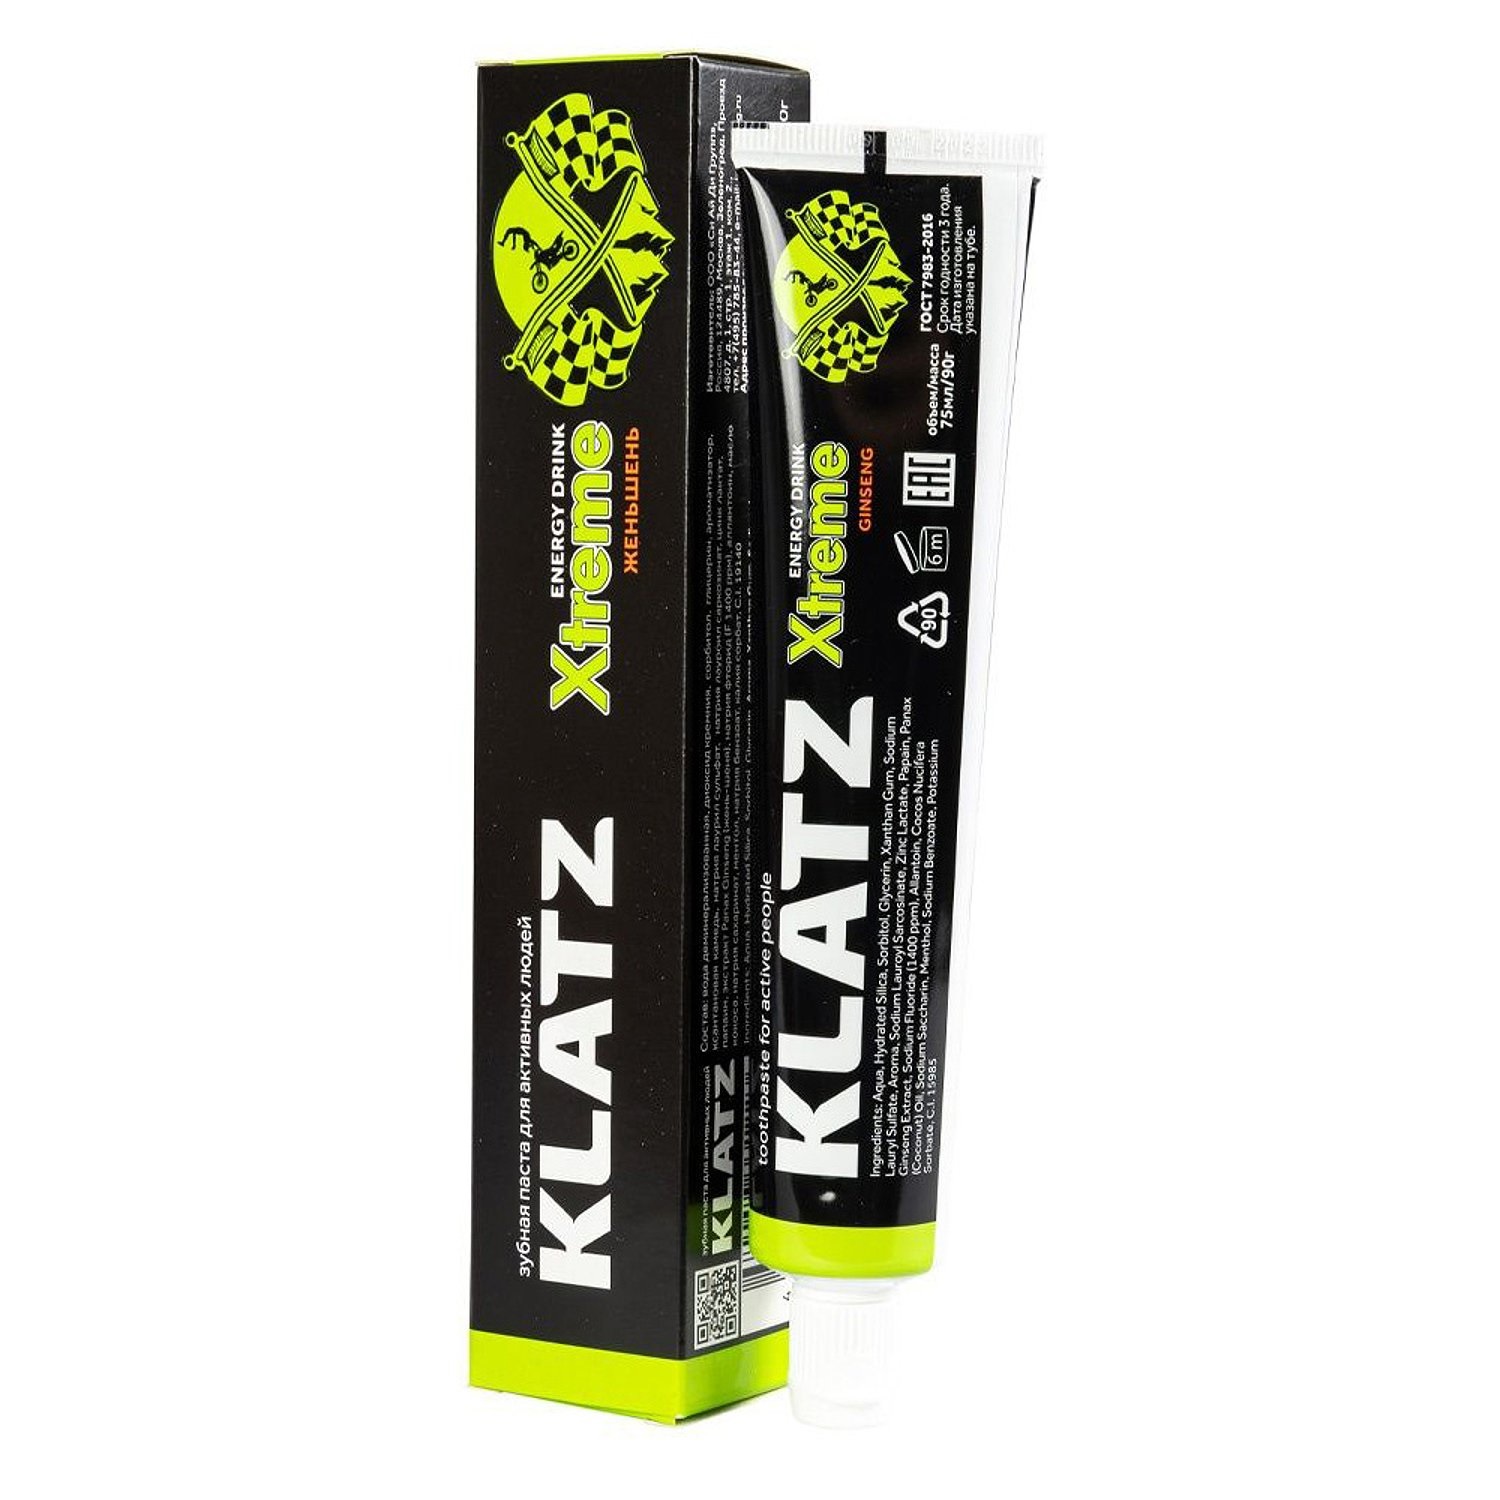 Зубная паста KLATZ X-treme Energy Drink для активных людей, женьшень, 75 мл klatz паста зубная для активных людей женьшень x treme energy drink 75 мл